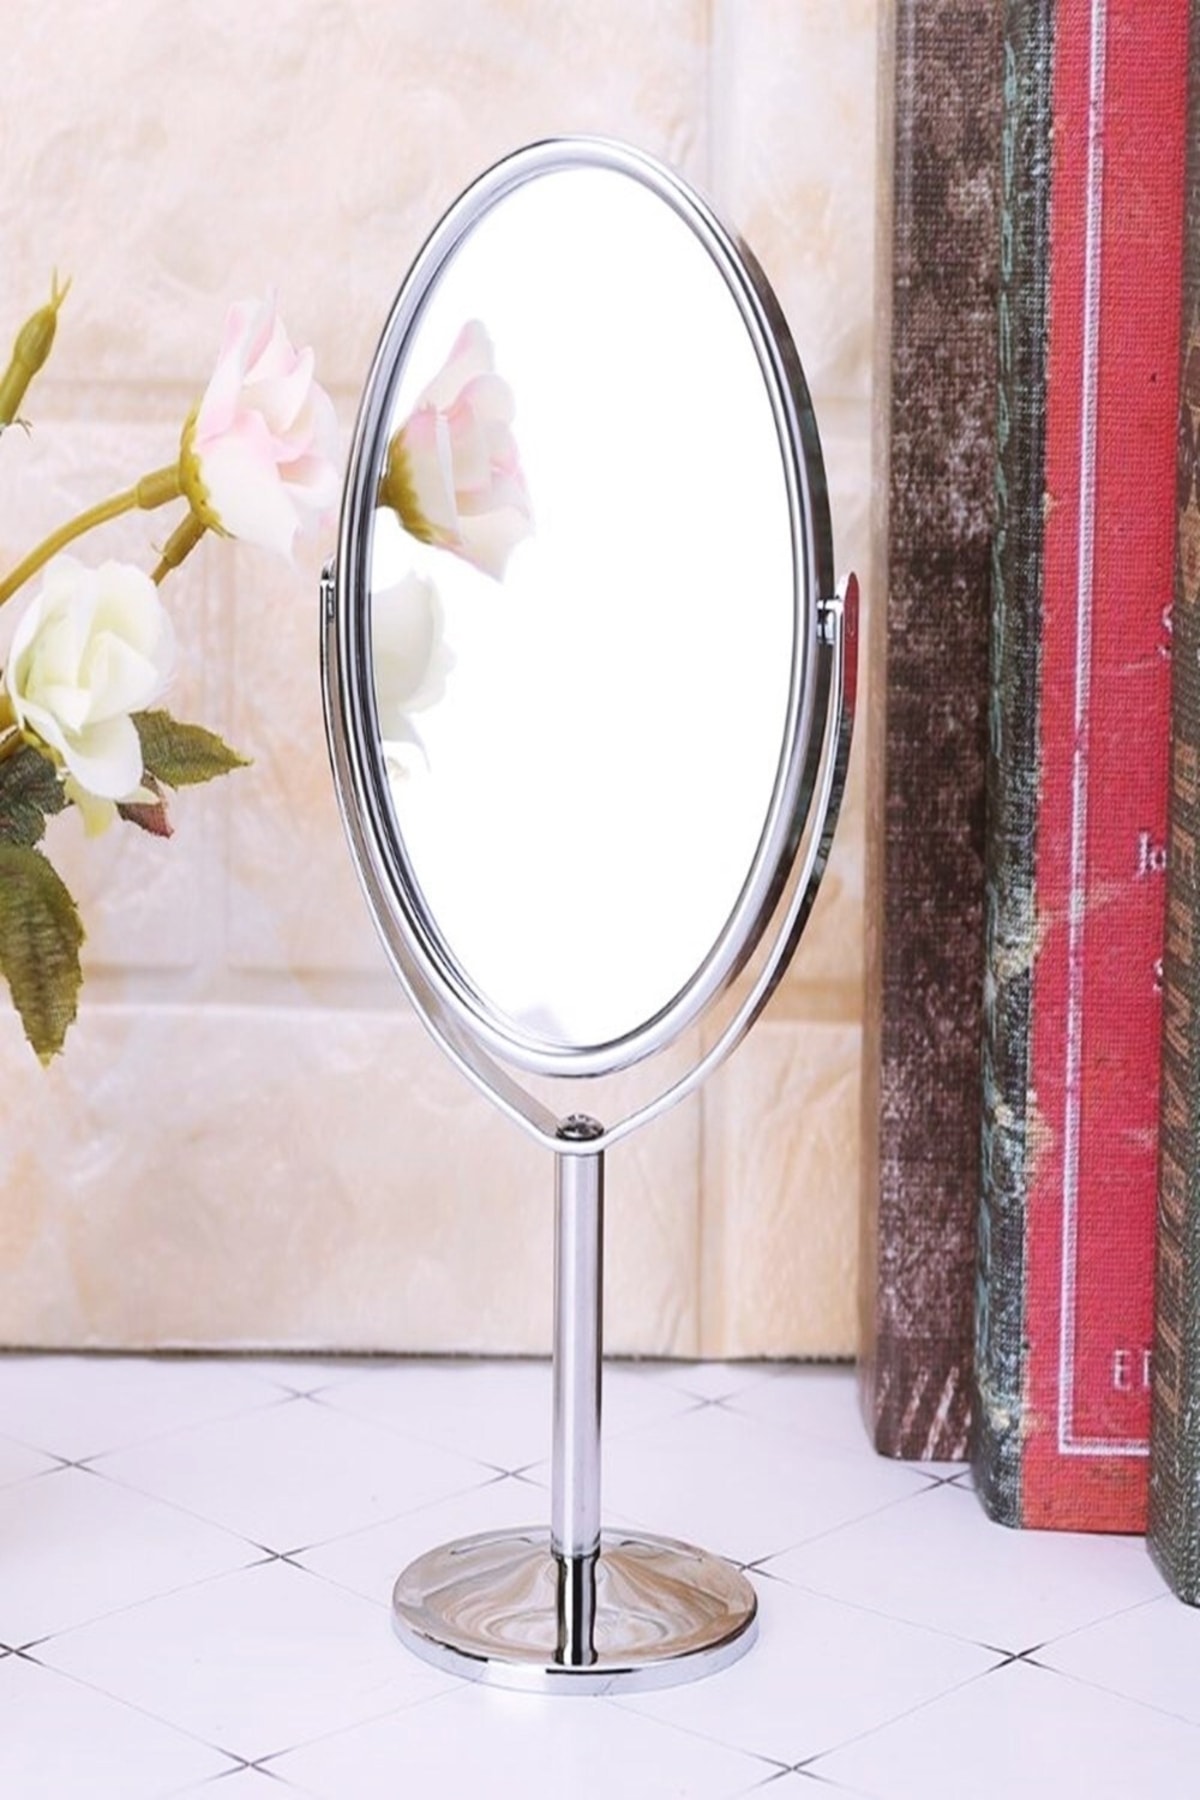 epazzar 2 Adet Masa Üstü Mini Makyaj & Bakım Aynası 360° Dönebilen Çift Taraflı Büyüteçli Makyaj Aynası 15x8